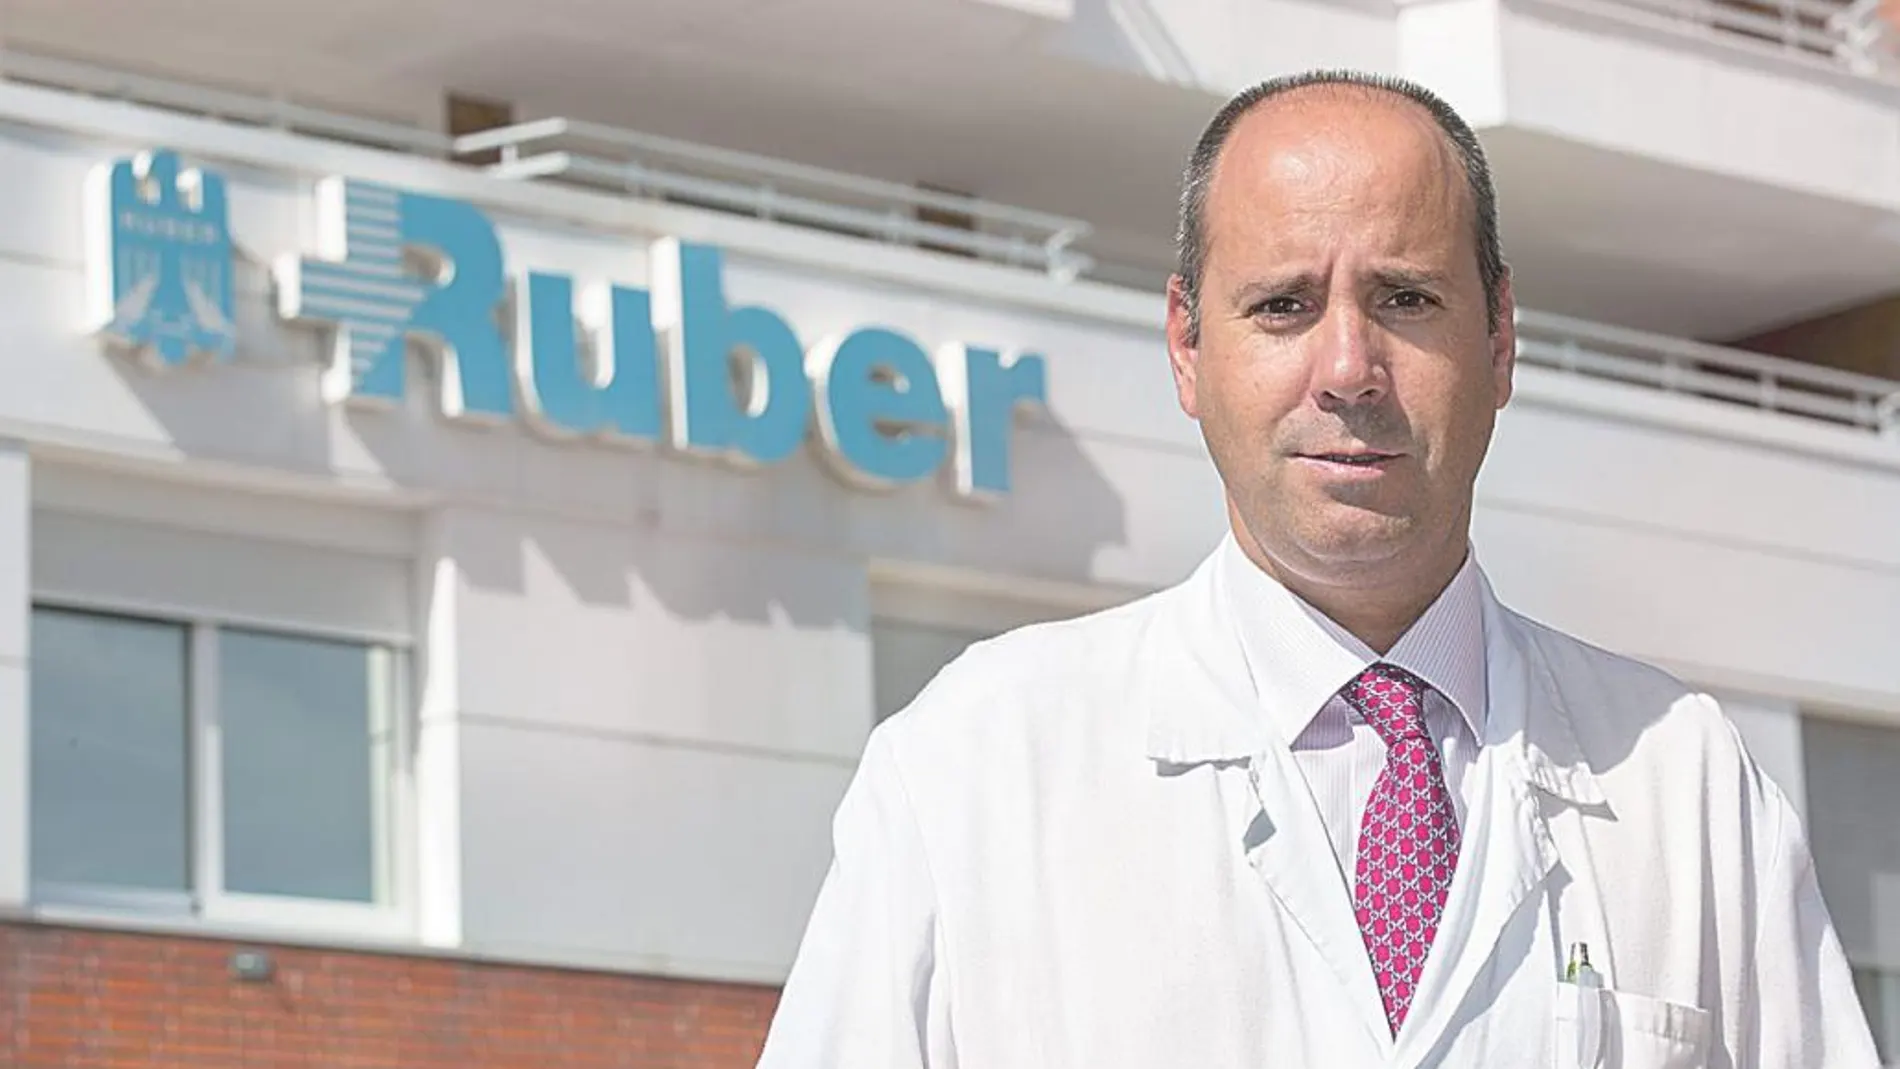 Dr. Javier Cortés Castán (Director del Instituto Oncológico Baselga (IOB) Madrid en el Hospital Ruber Internacional y en el Complejo Hospitalario Ruber Juan Bravo. Grupo Quirónsalud)